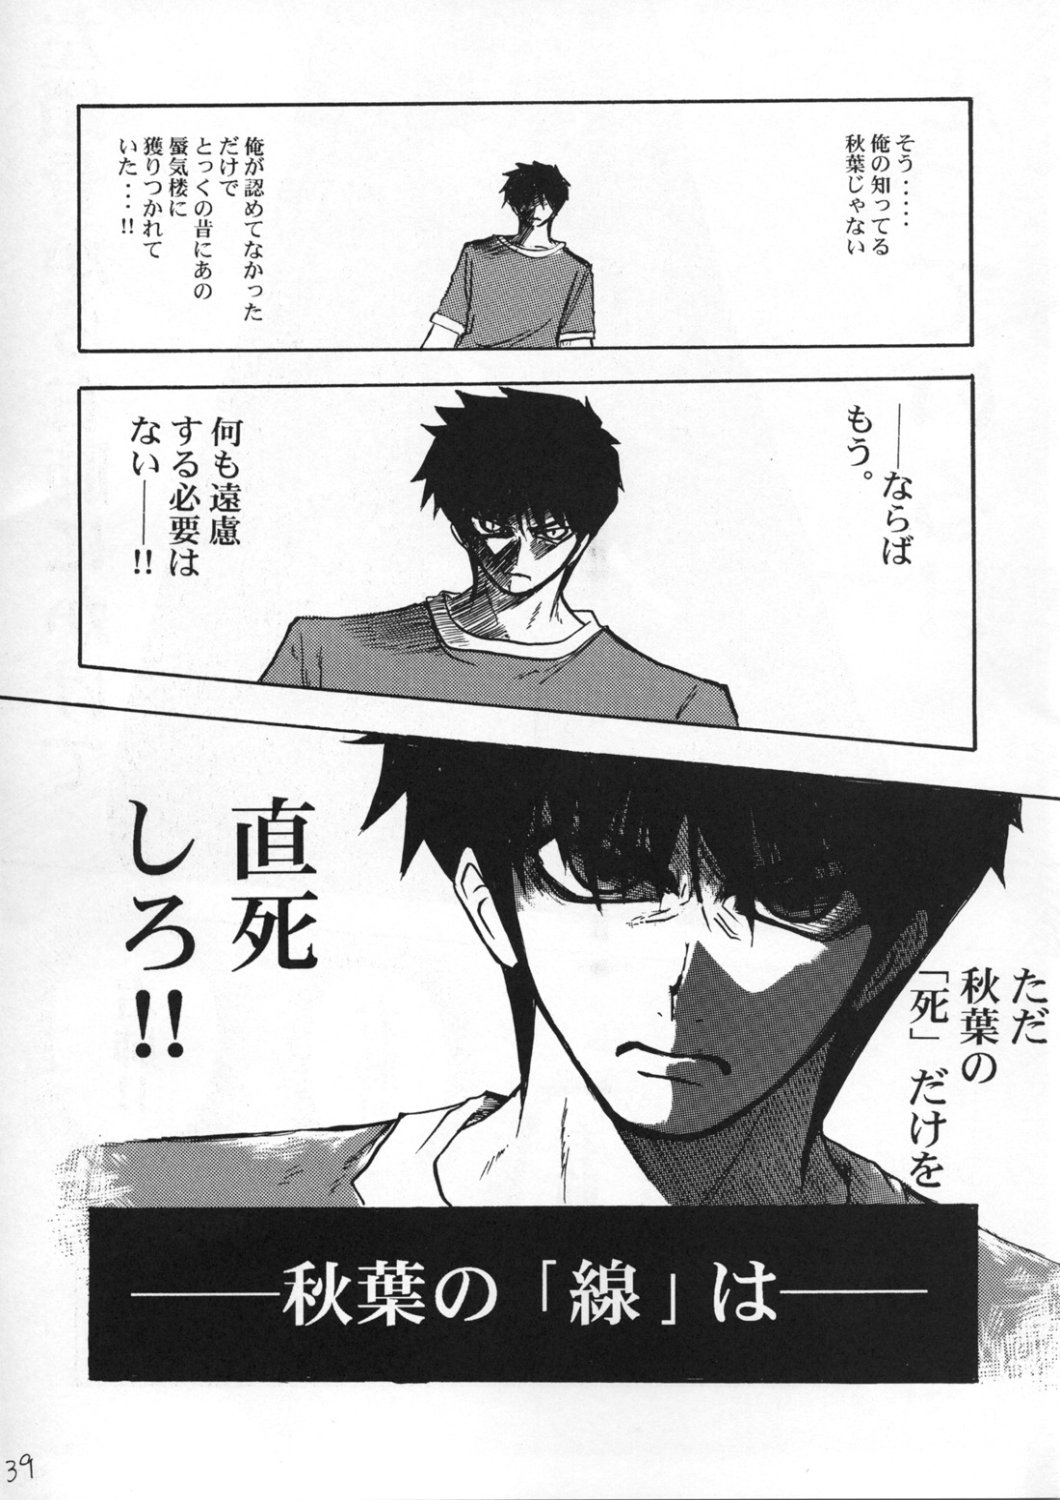 [Inochi no Furusato, Neko-bus Tei, Zangyaku Koui Teate] Akihamania [AKIHA MANIACS] (Tsukihime) page 38 full